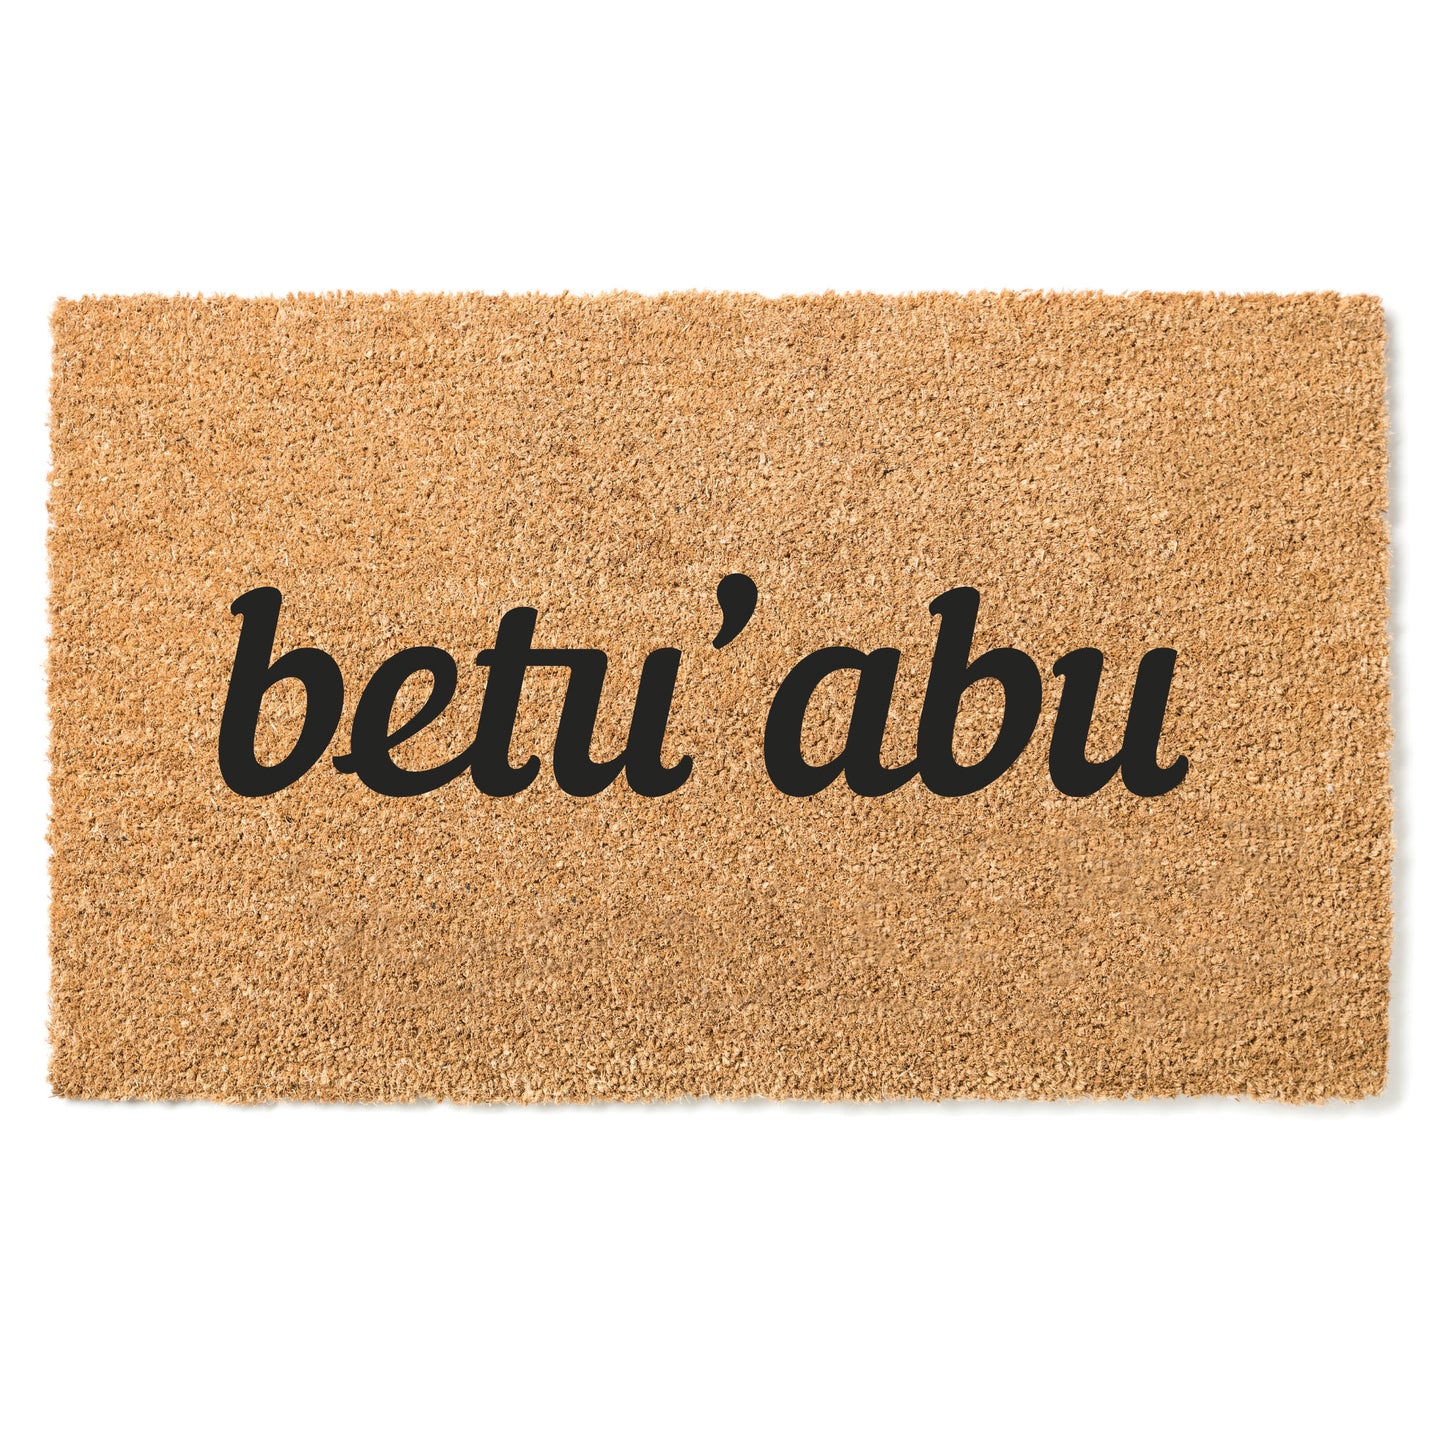 "Betu abu" door mat - Greeting in Tshiluba